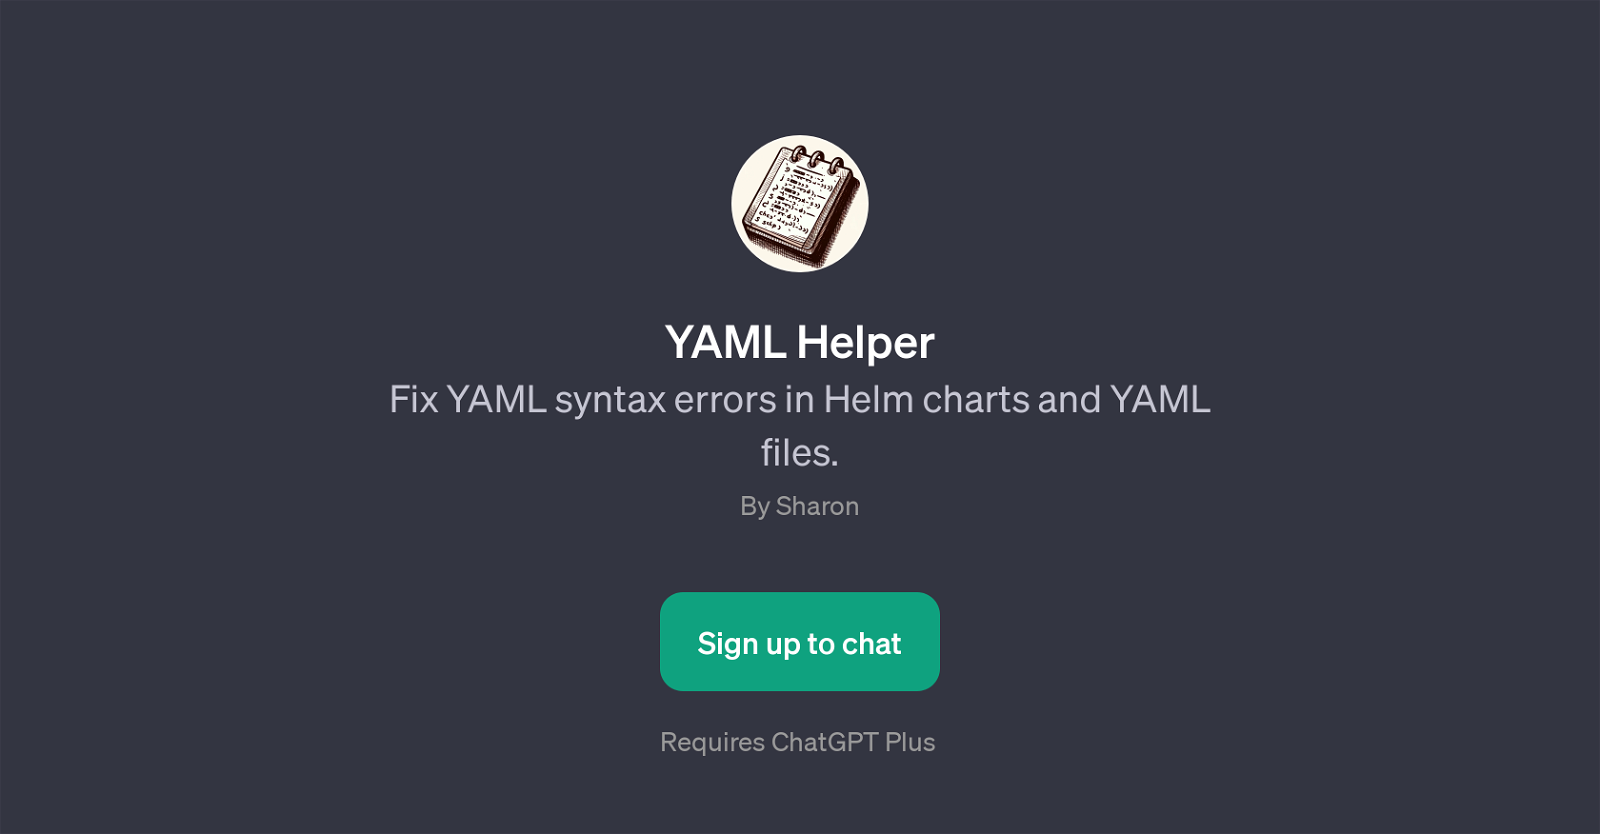 YAML Helper website